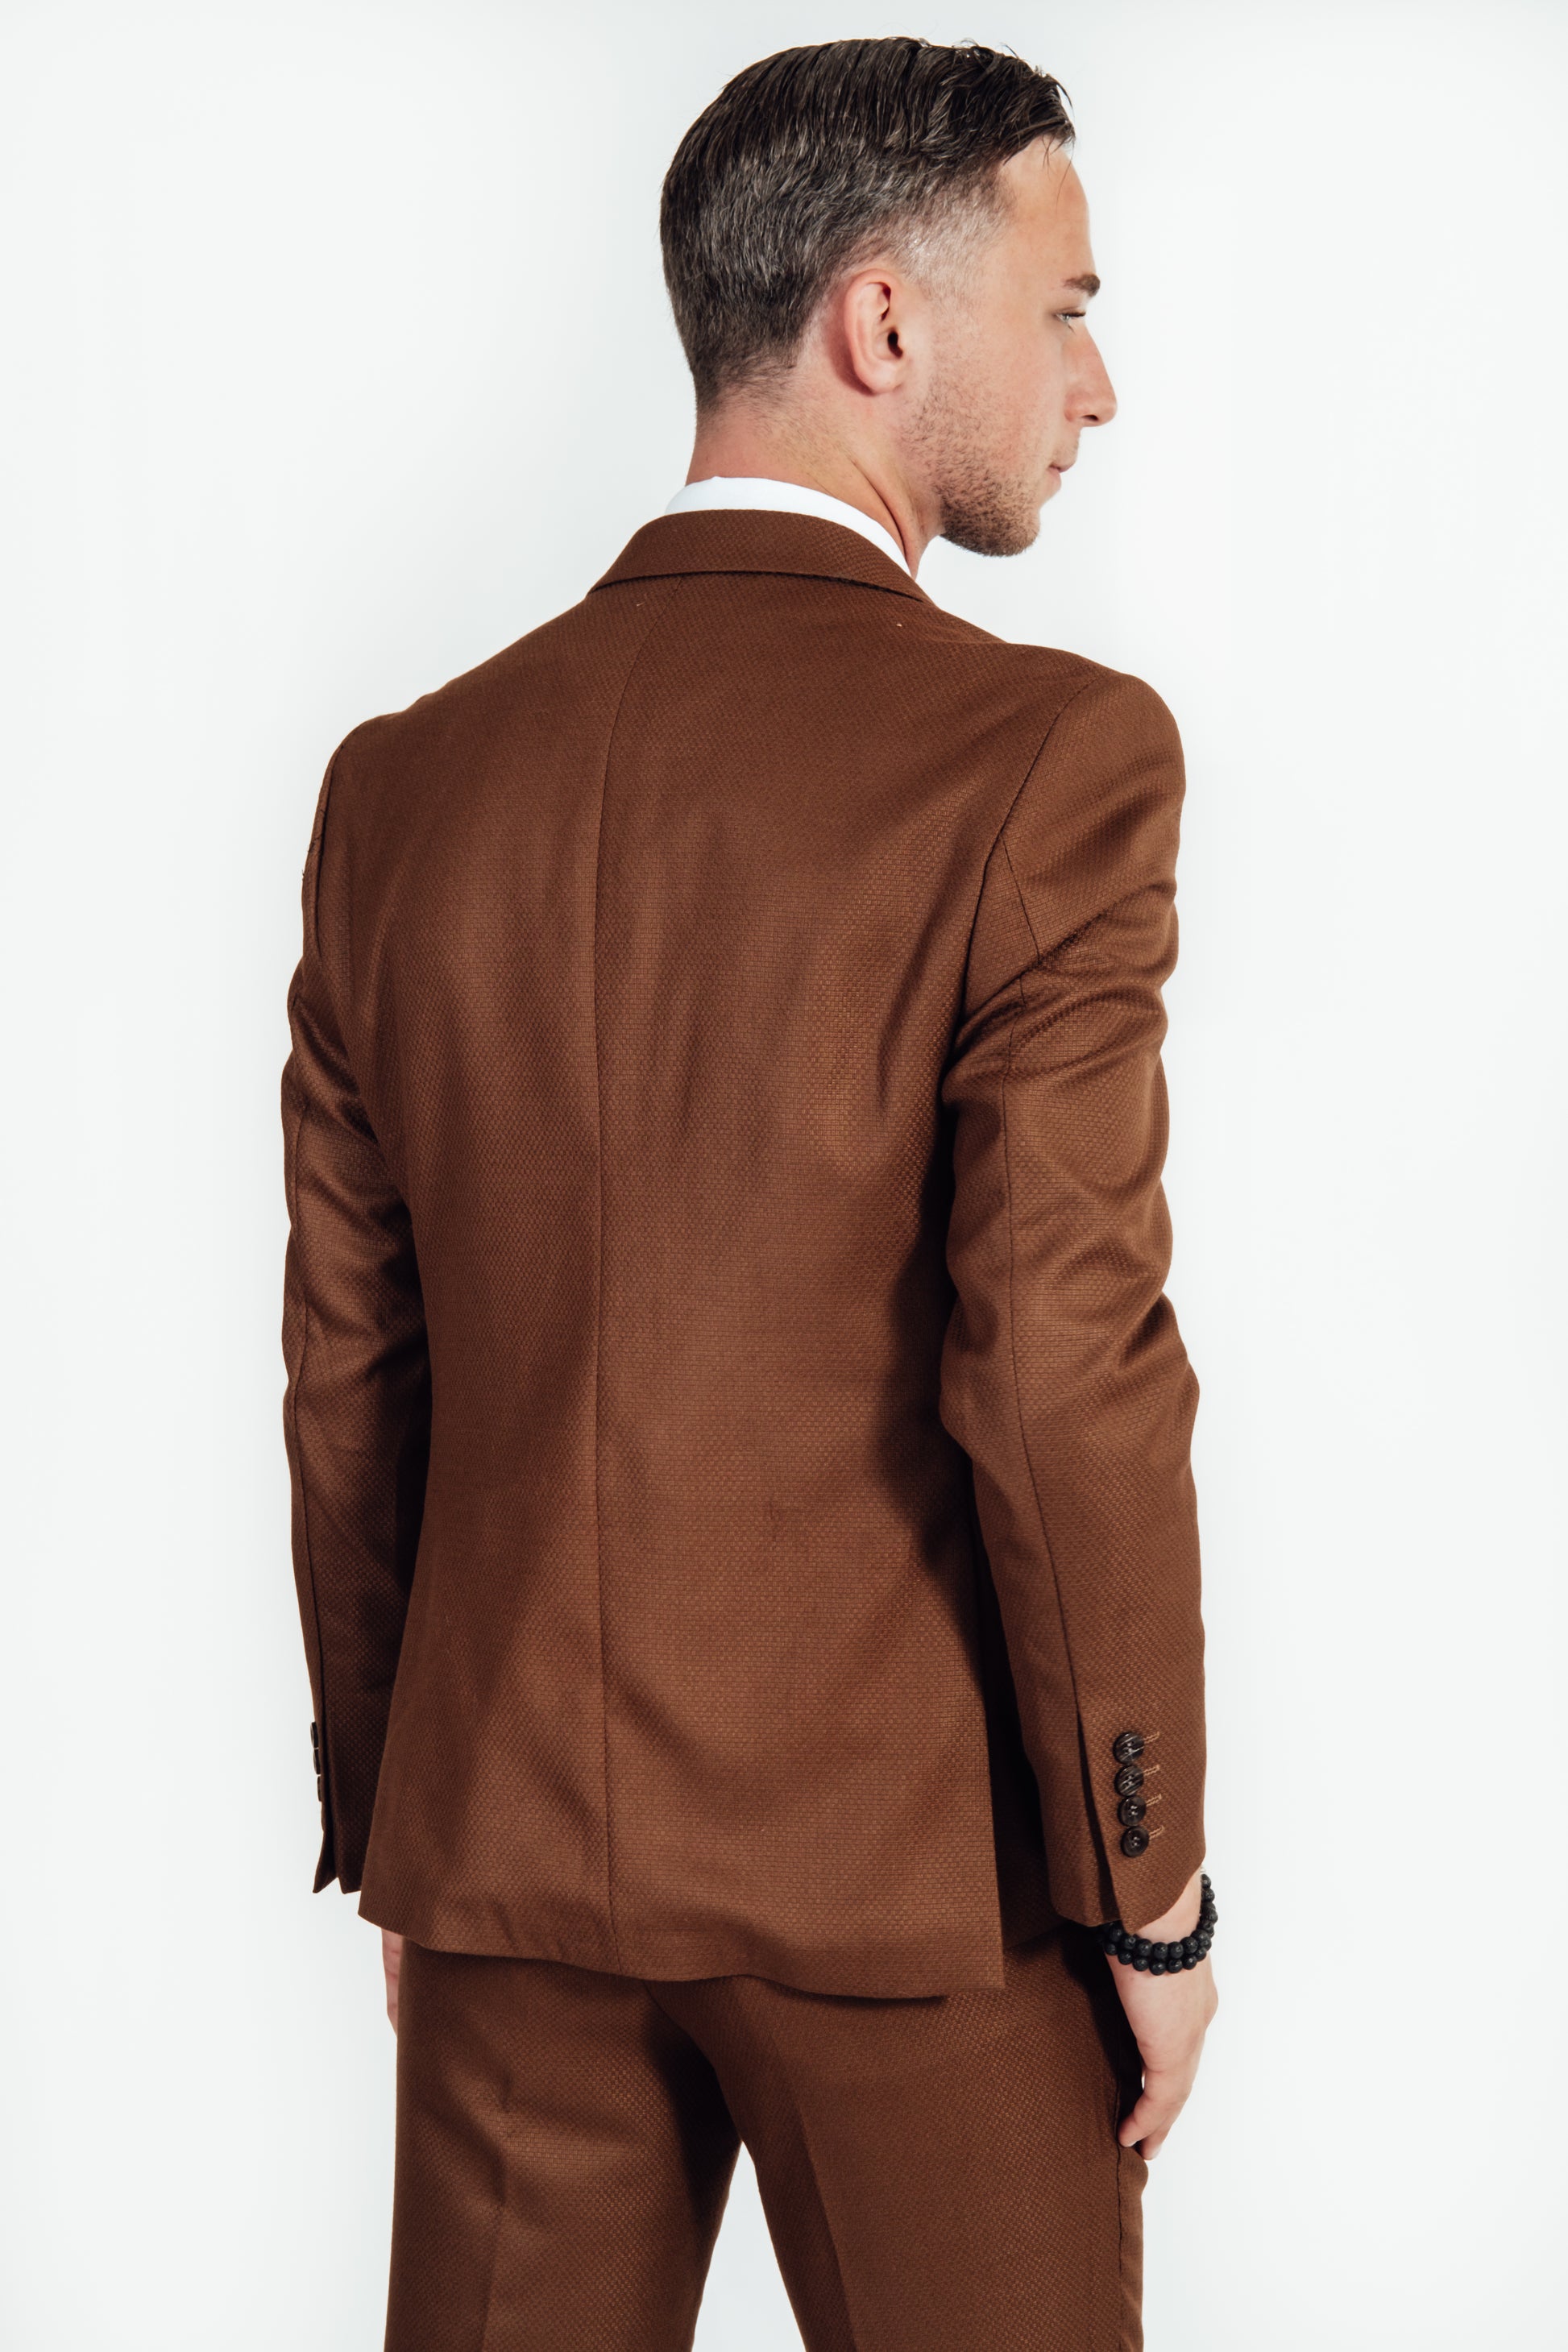 Achterkant van bruin dik geweven kostuumvest van Suitify gedragen door een man